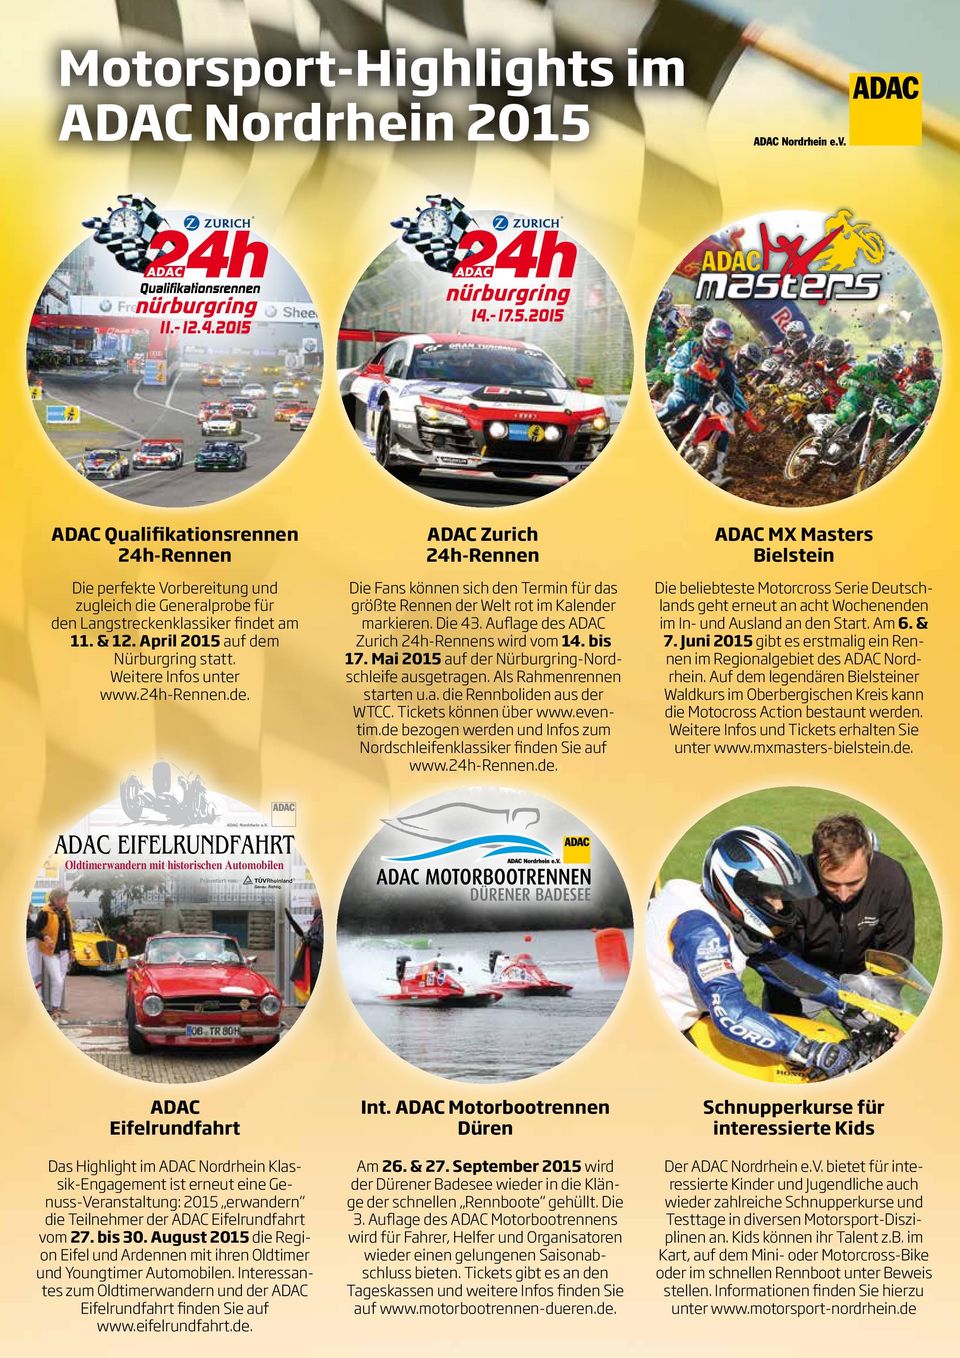 Auflage des ADAC Zurich 24h-Rennens wird vom 14. bis 17. Mai 2015 auf der Nürburgring-Nordschleife ausgetragen. Als Rahmenrennen starten u.a. die Rennboliden aus der WTCC. Tickets können über www.